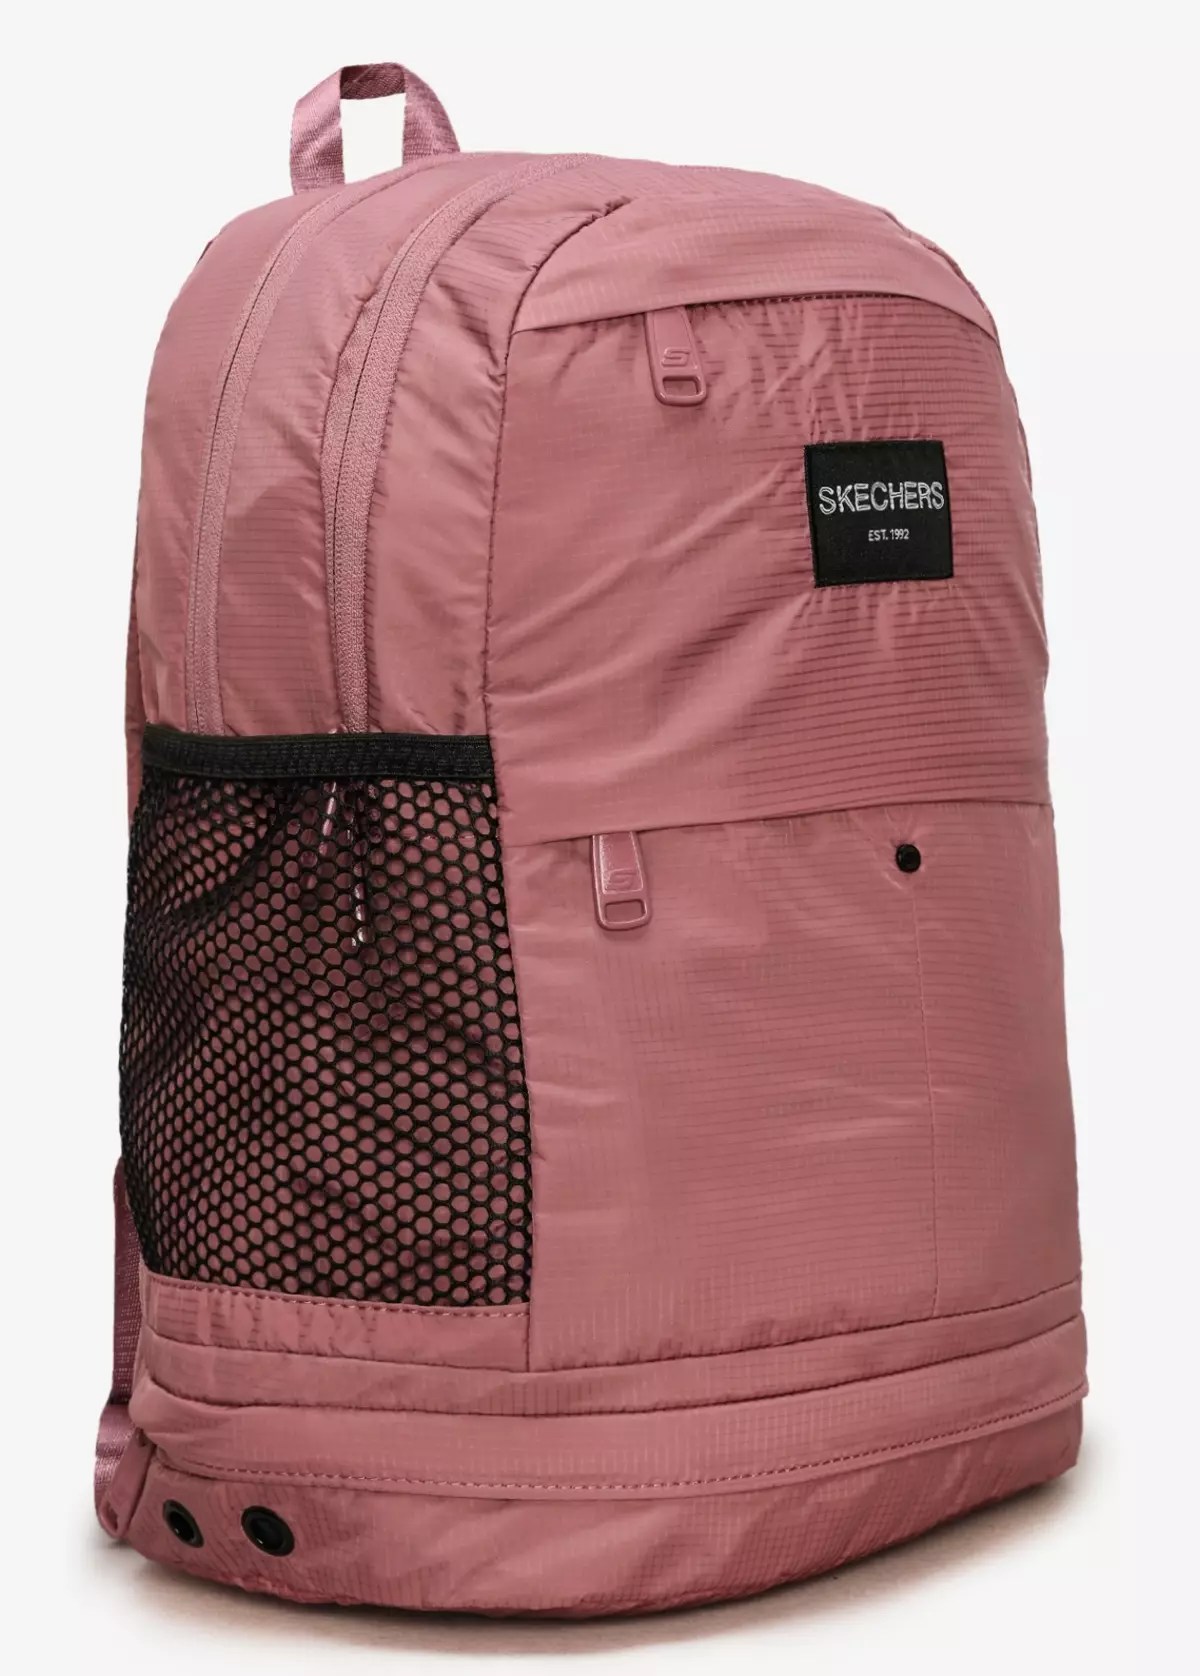 Skechers backpack: Vakadzi vatema uye vakasvibira, grey uye tsvuku, diki yebhuruu uye mamwe marudzi, ongororo 15455_20